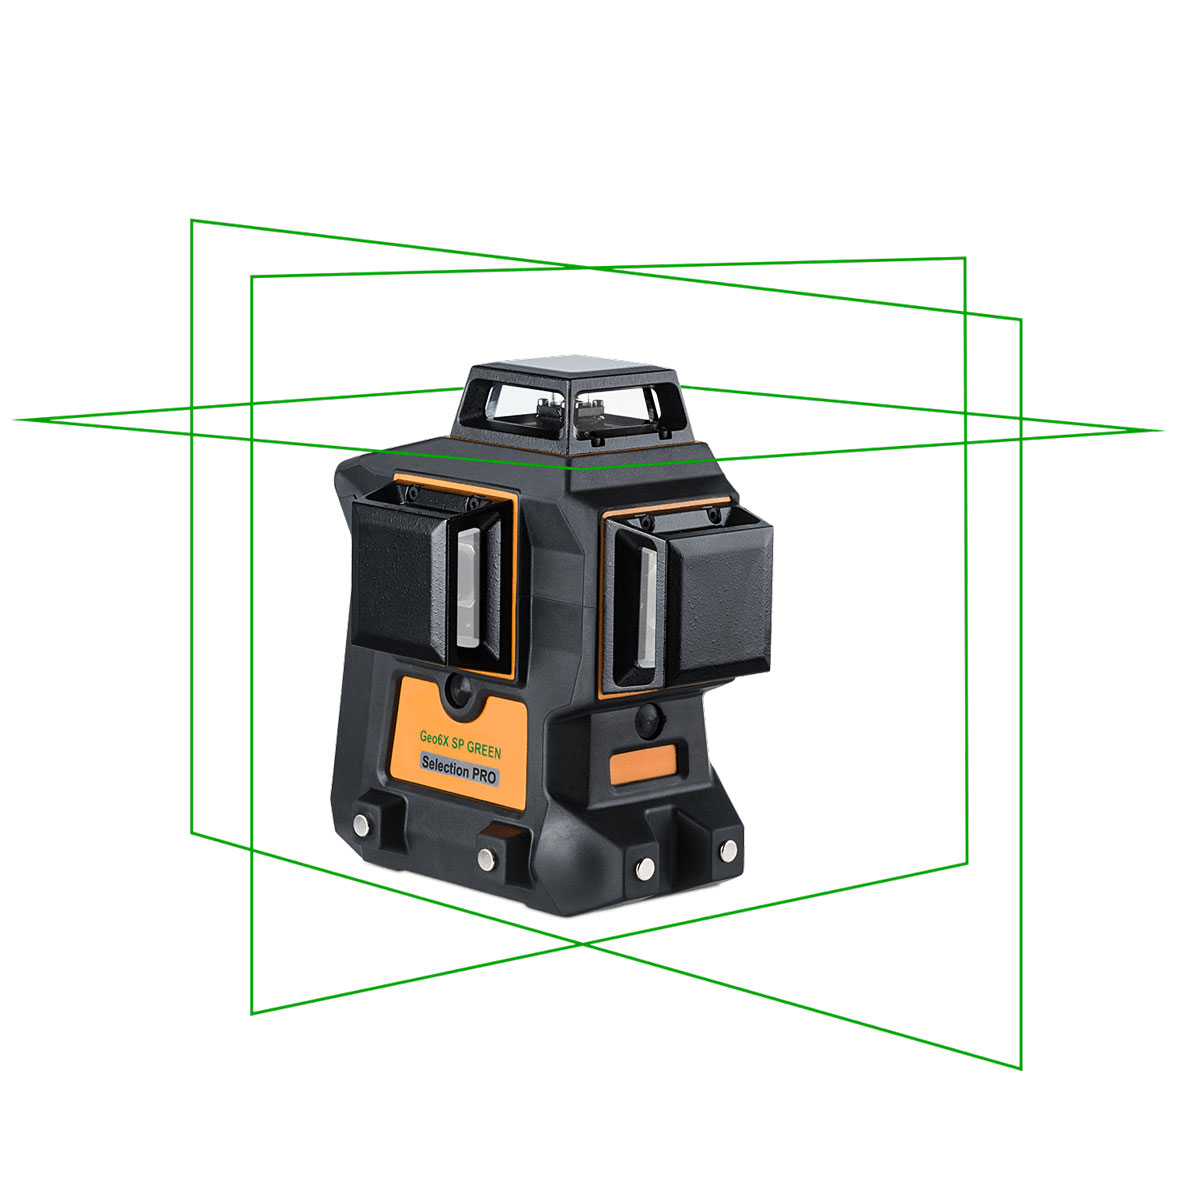 Niveau laser 3 x 360° en vert : Geo Fennel Geo6X SP GREEN KIT (batterie et support) - Multi-fonctions pour tous types de travaux en intérieur